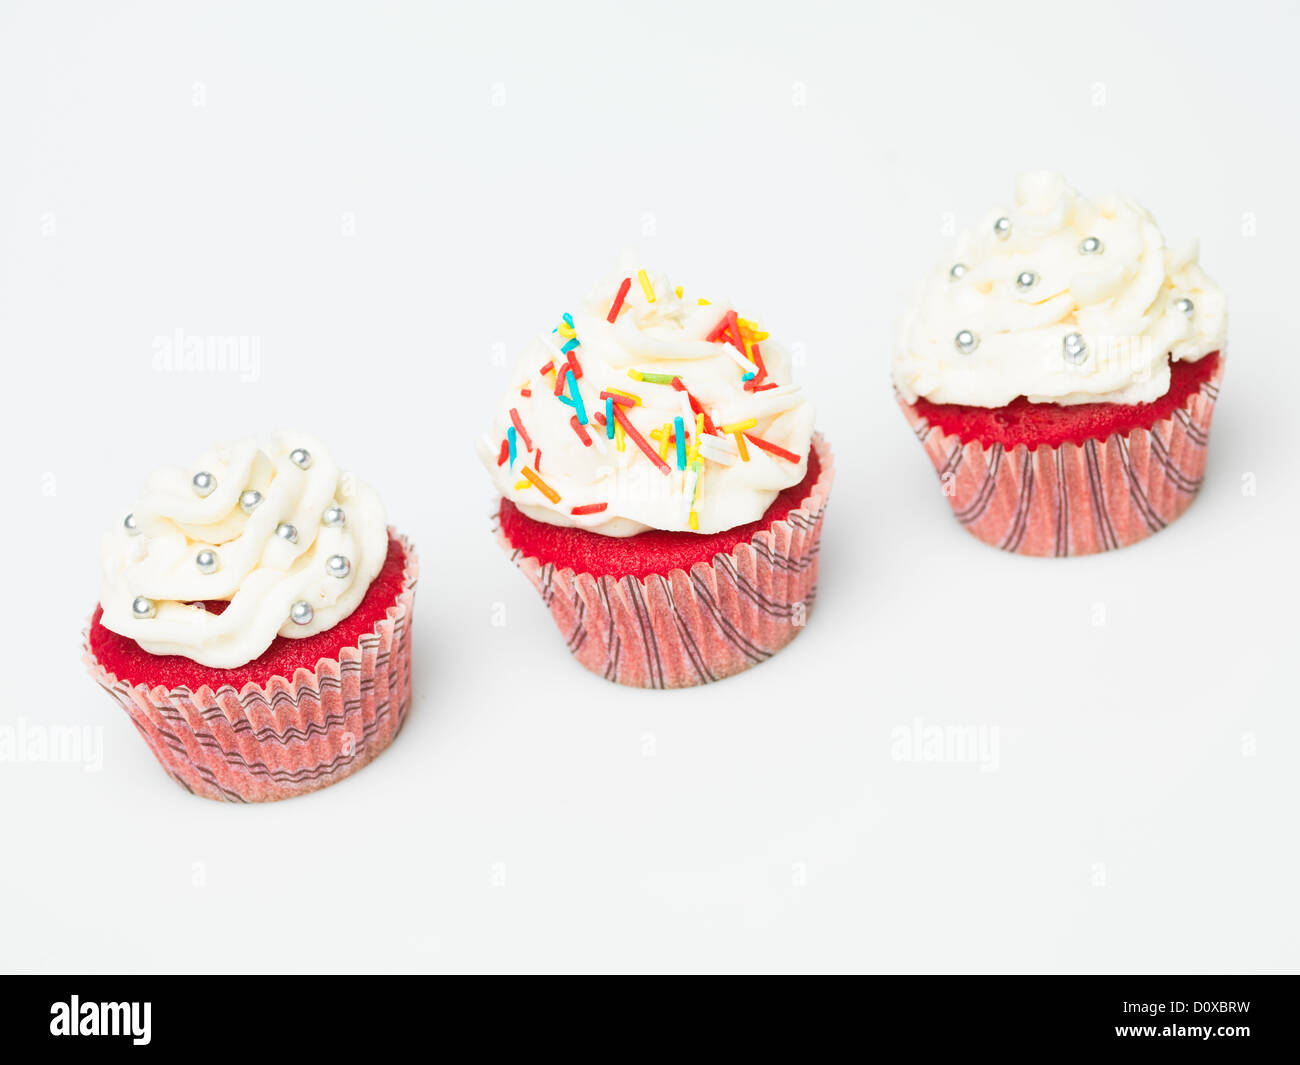 Groupe d'ornements multicolores détails muffins fond blanc Banque D'Images